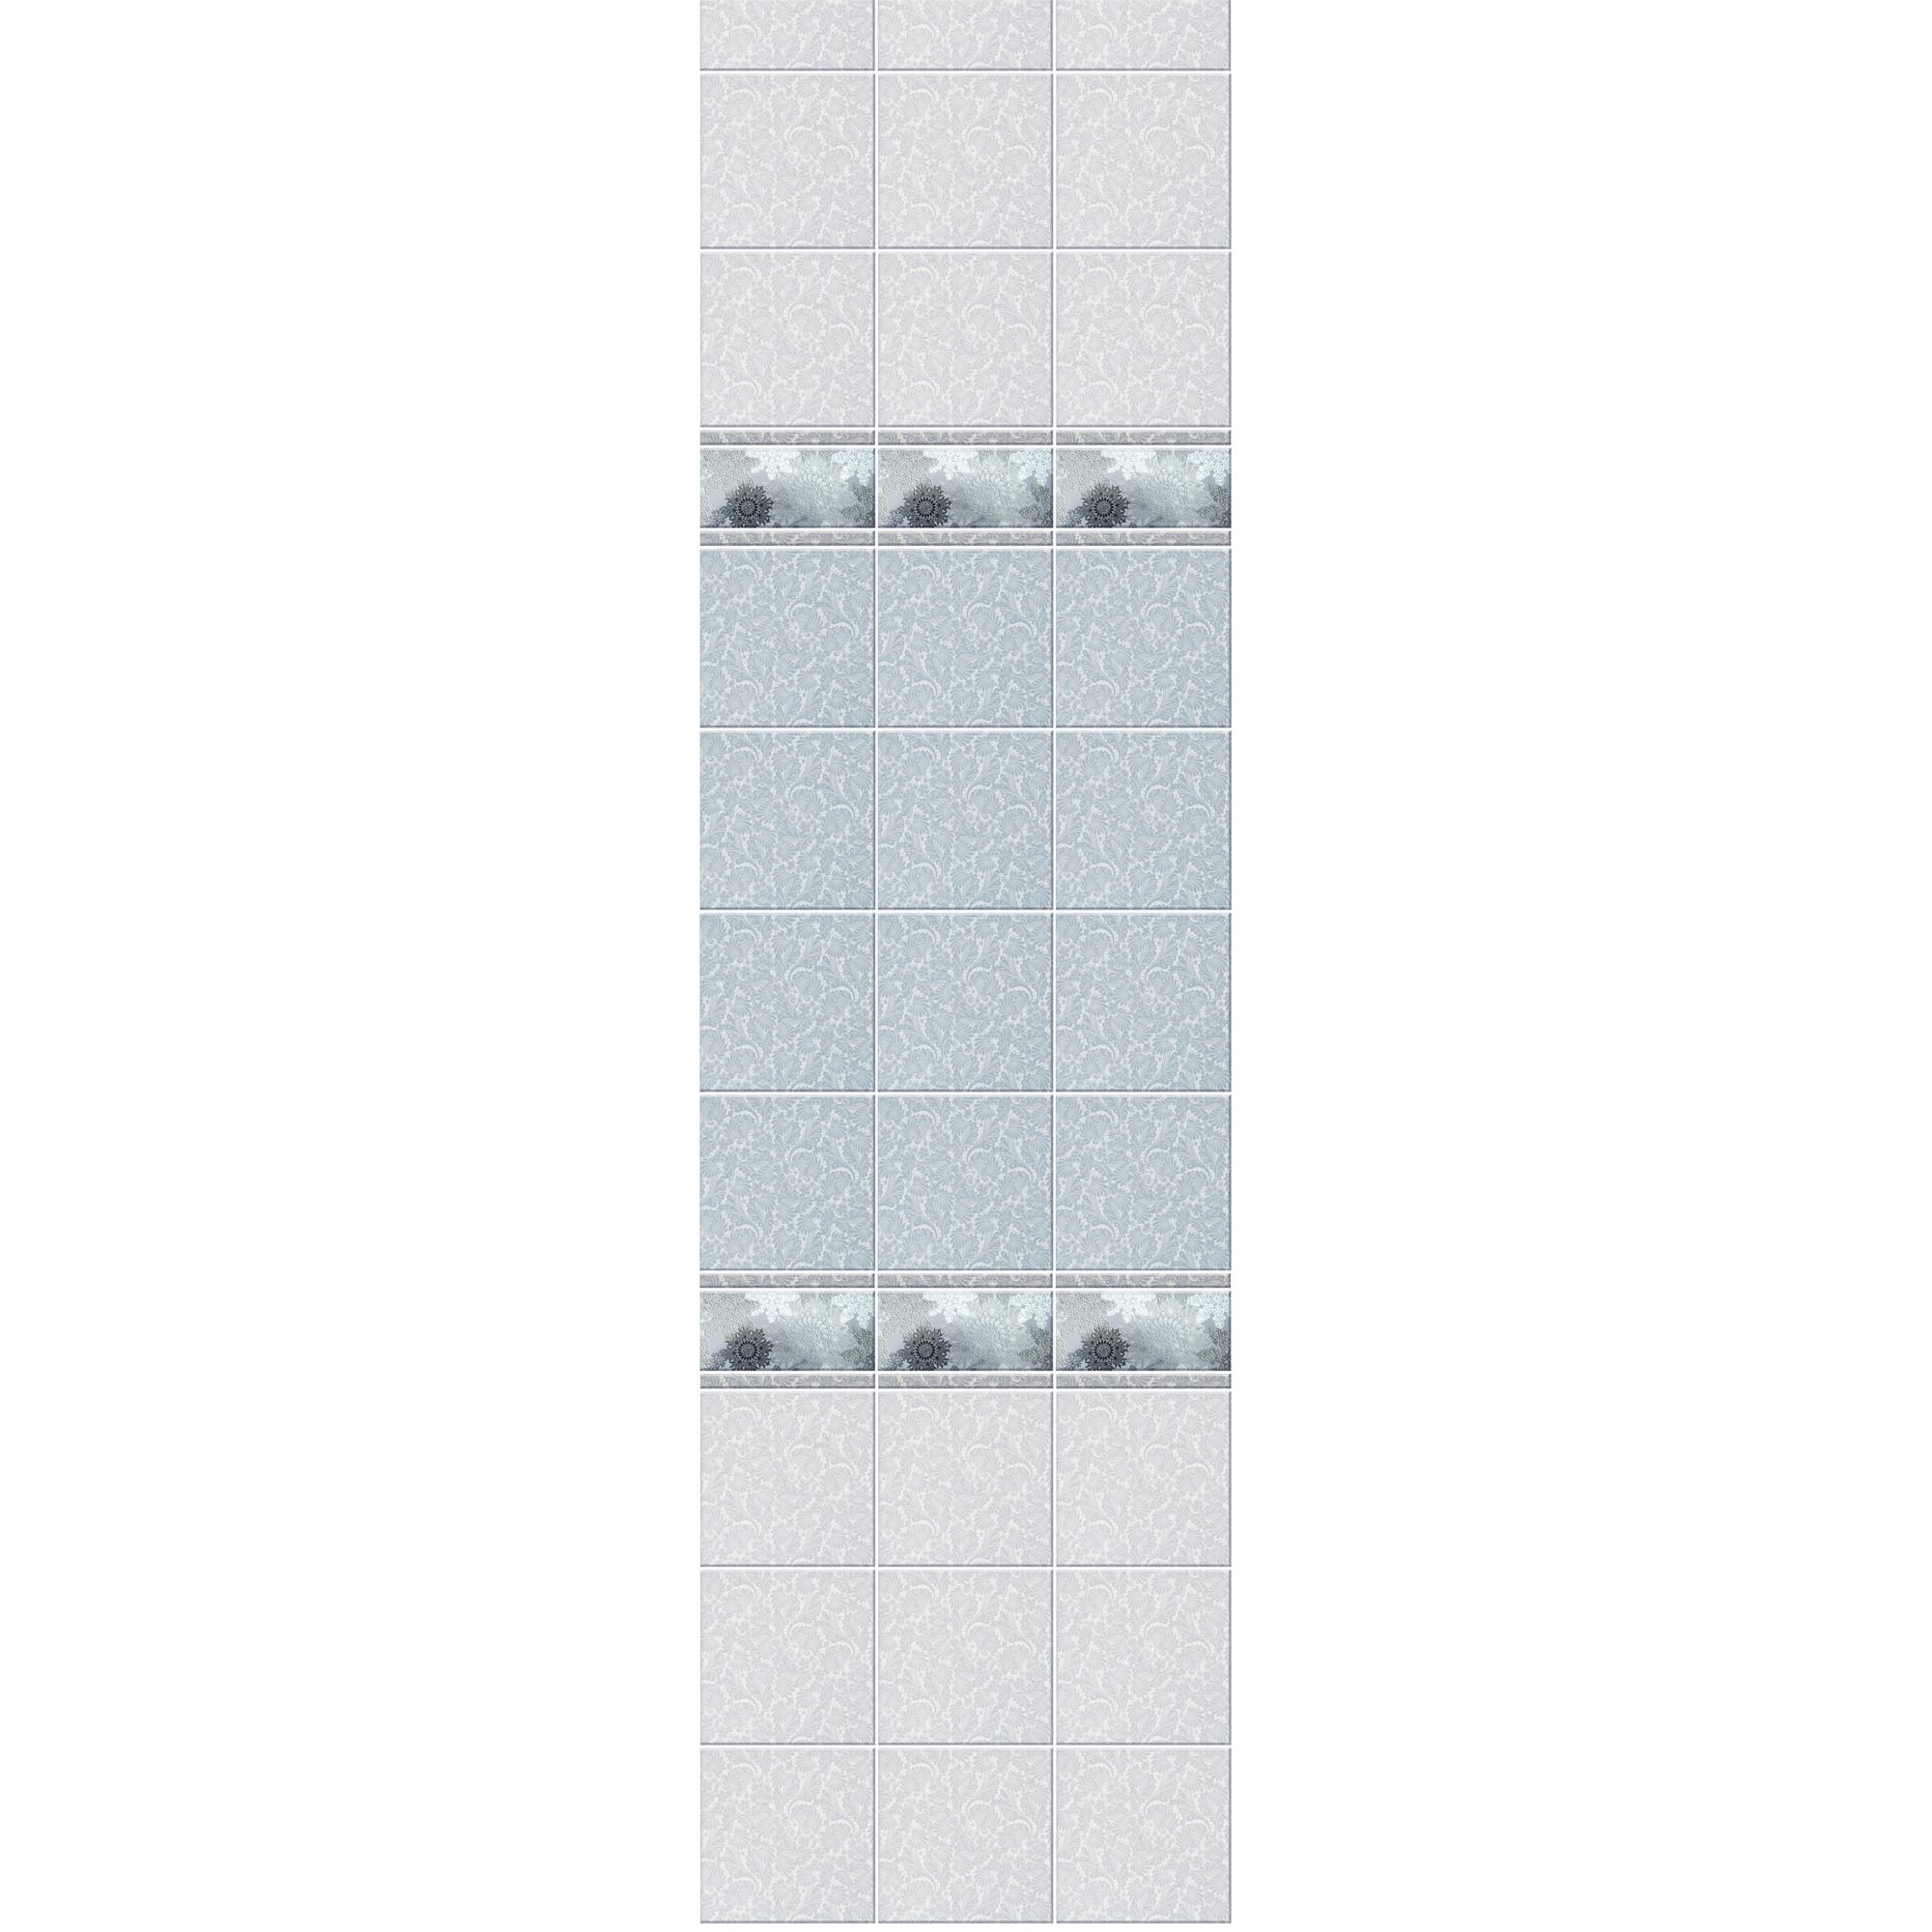 Стеновая панель ПВХ Novita с эффектом мерцания 3D Зимняя сказка добор 2700х250 мм